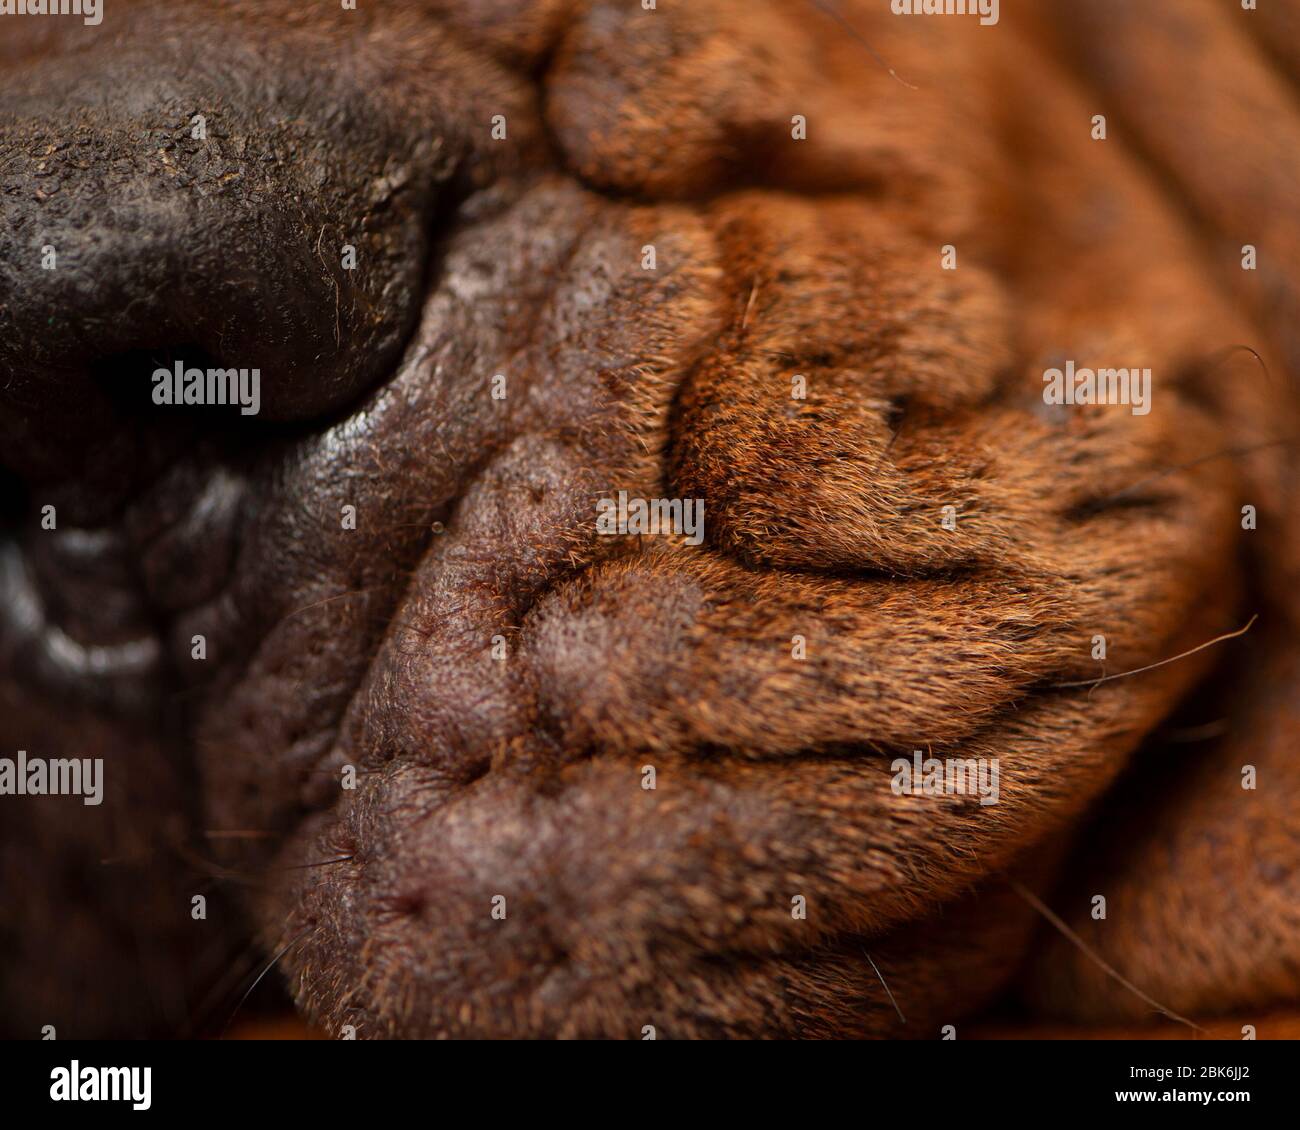 sore skin allergy in dog Stock Photo